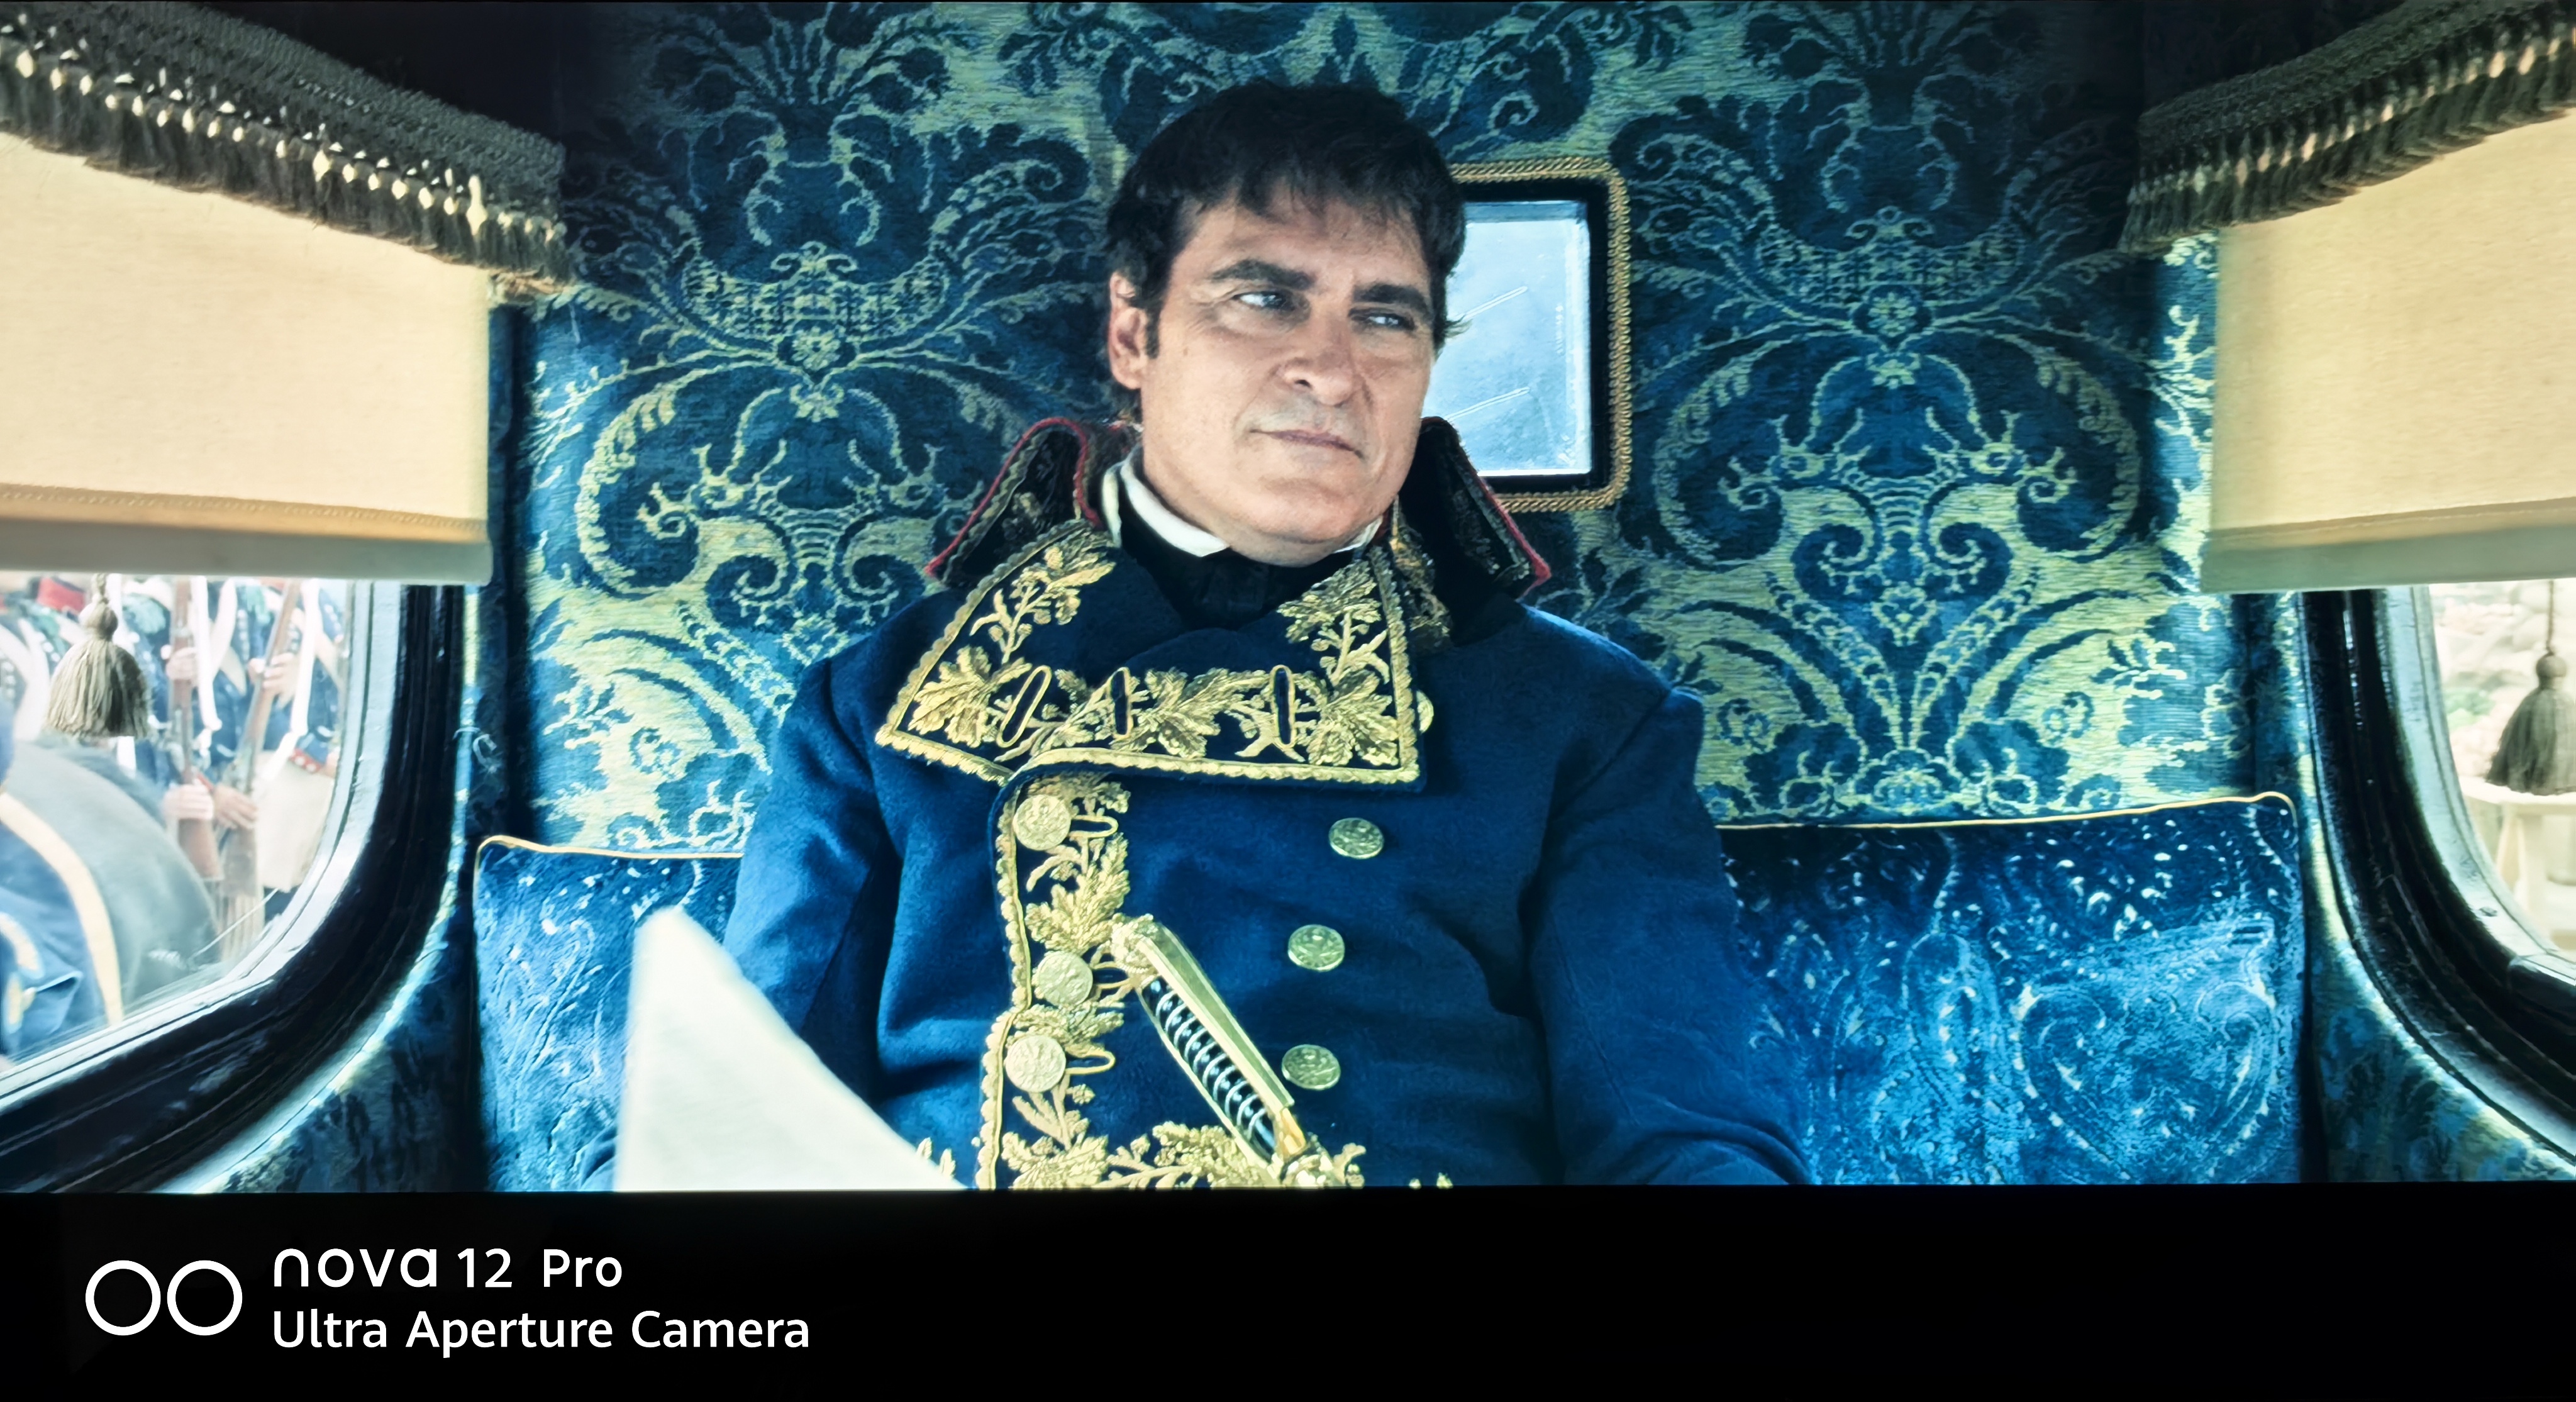 拿破仑4 k, 是一部拍个相当不错的传记影片。